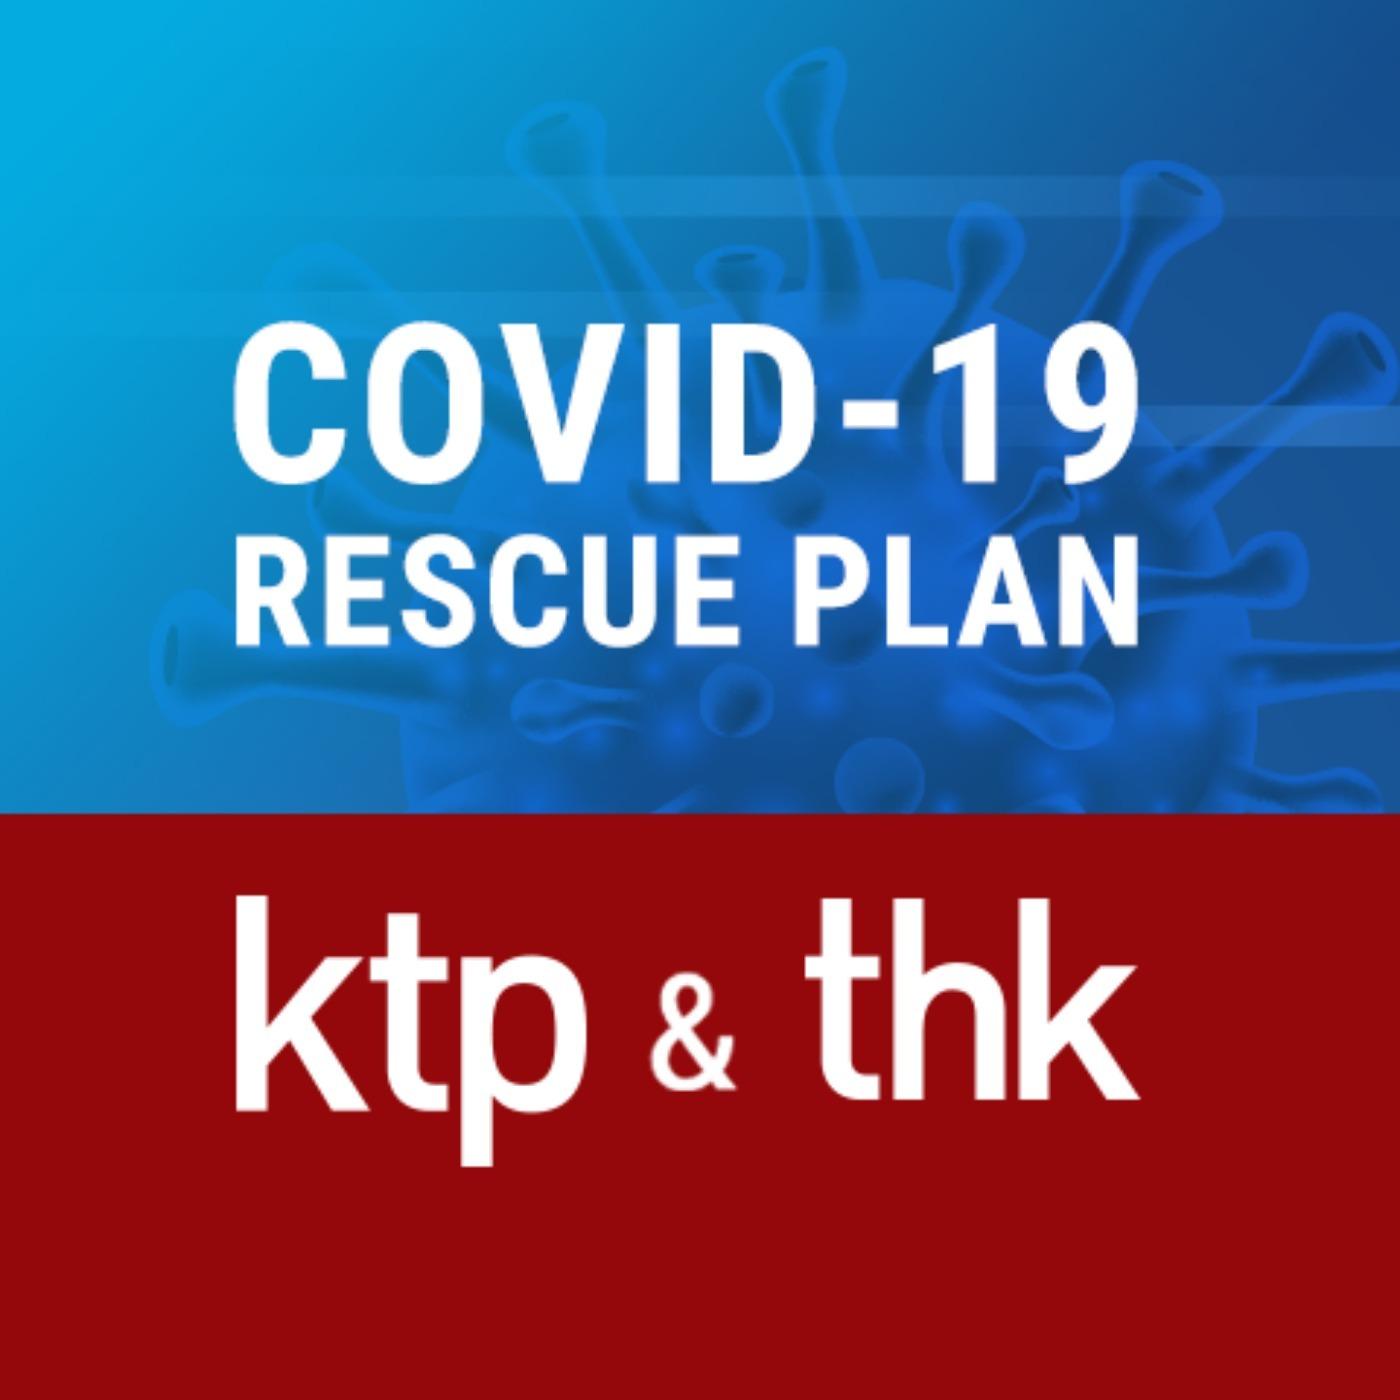 KTP THK Rescue plan